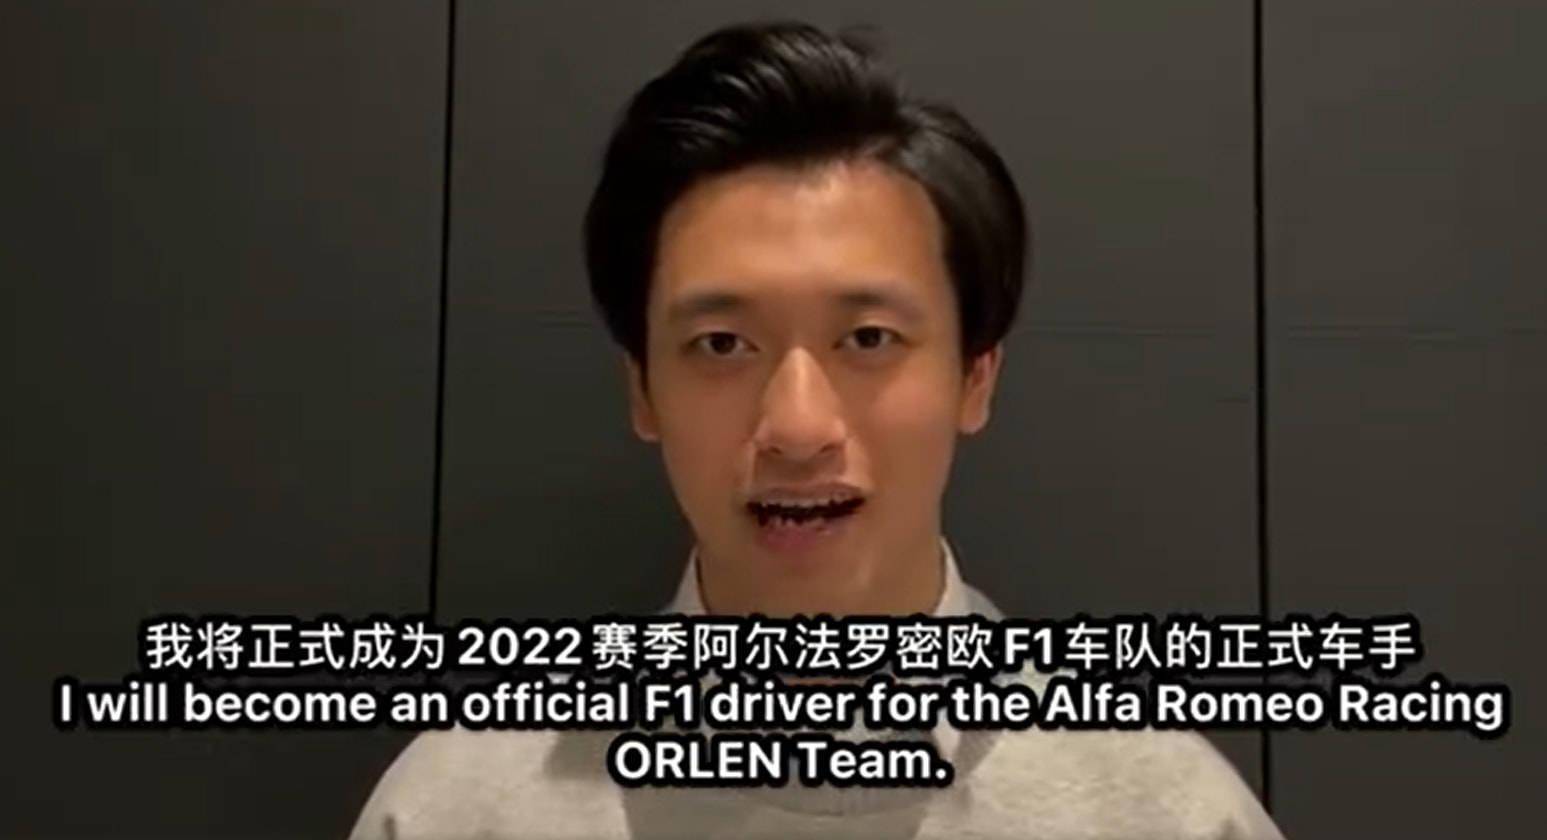 中国车手周冠宇正式加入车队,将在2022赛季与瓦尔特利·博塔斯一起为